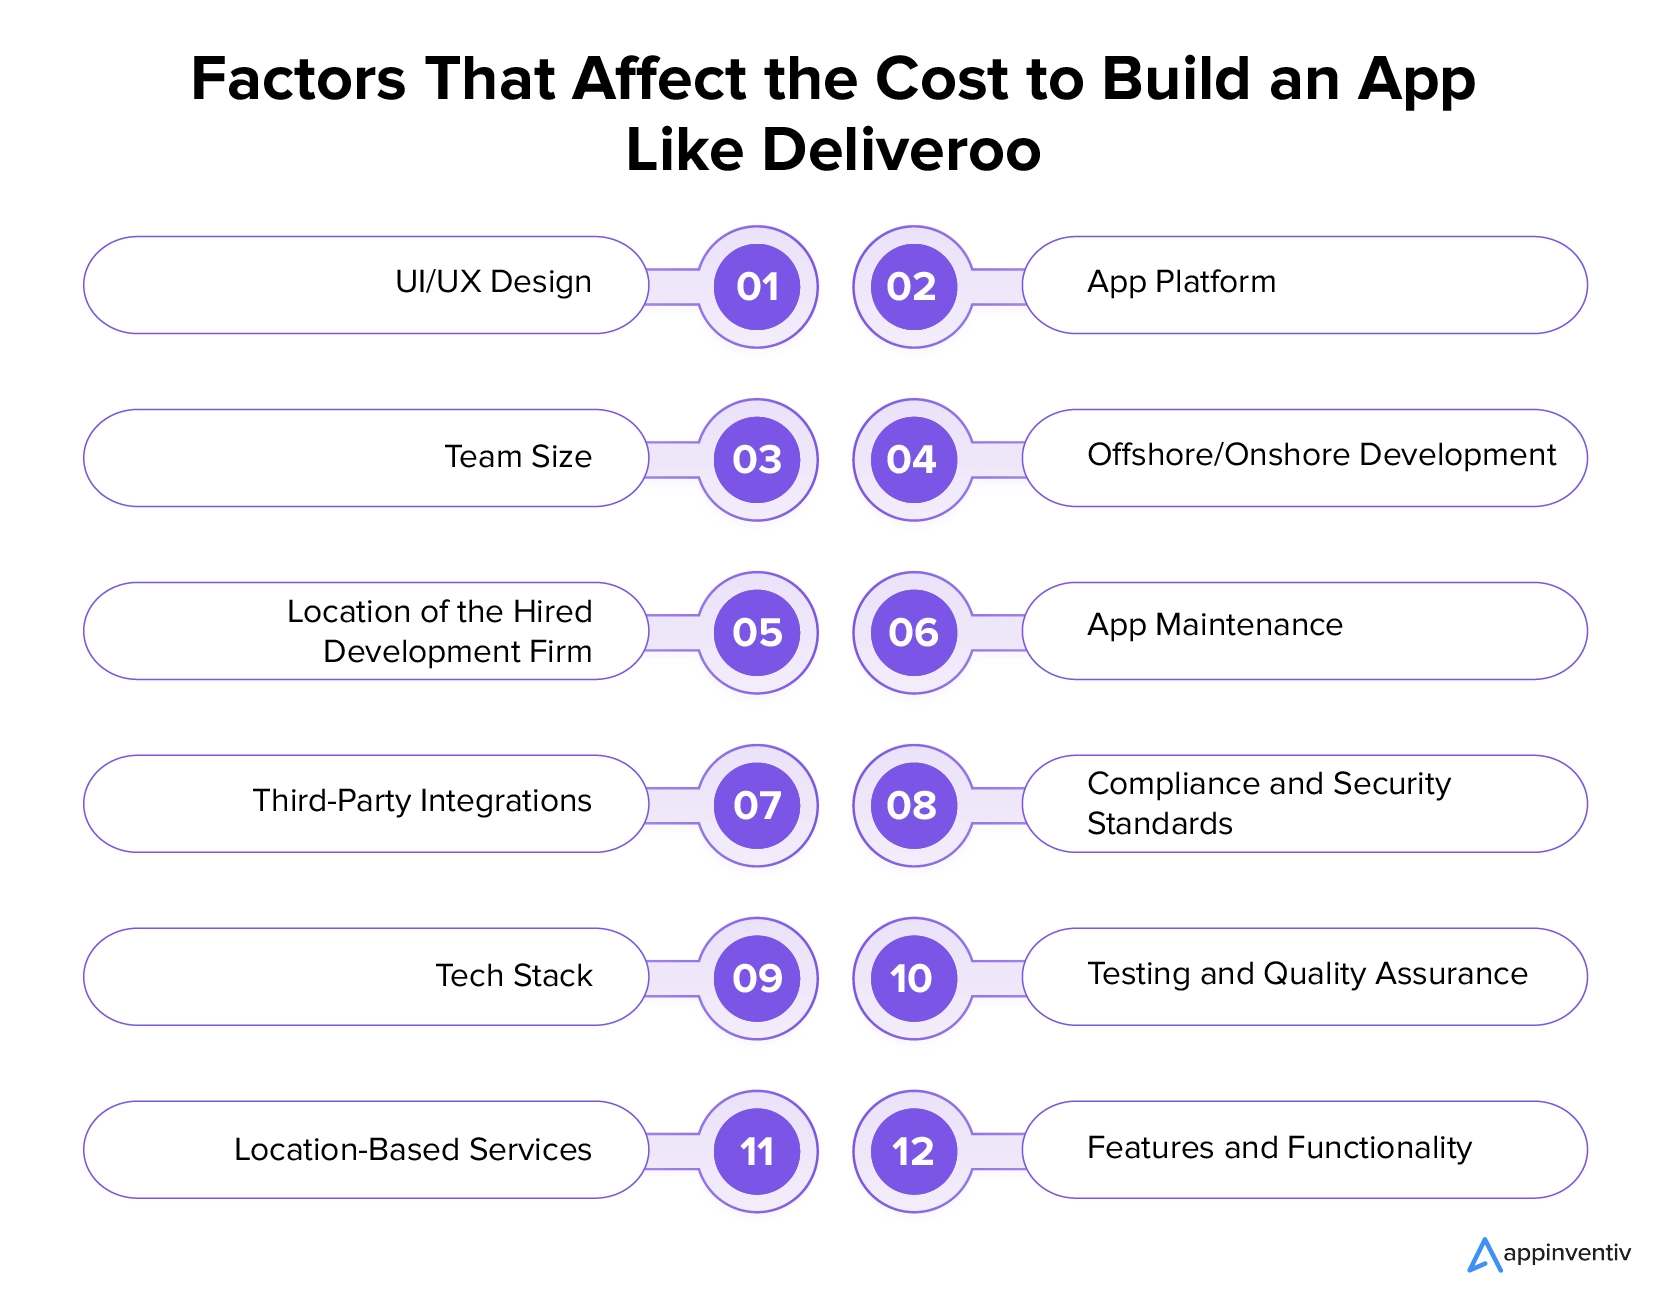 Factori care afectează costul construirii unei aplicații precum Deliveroo